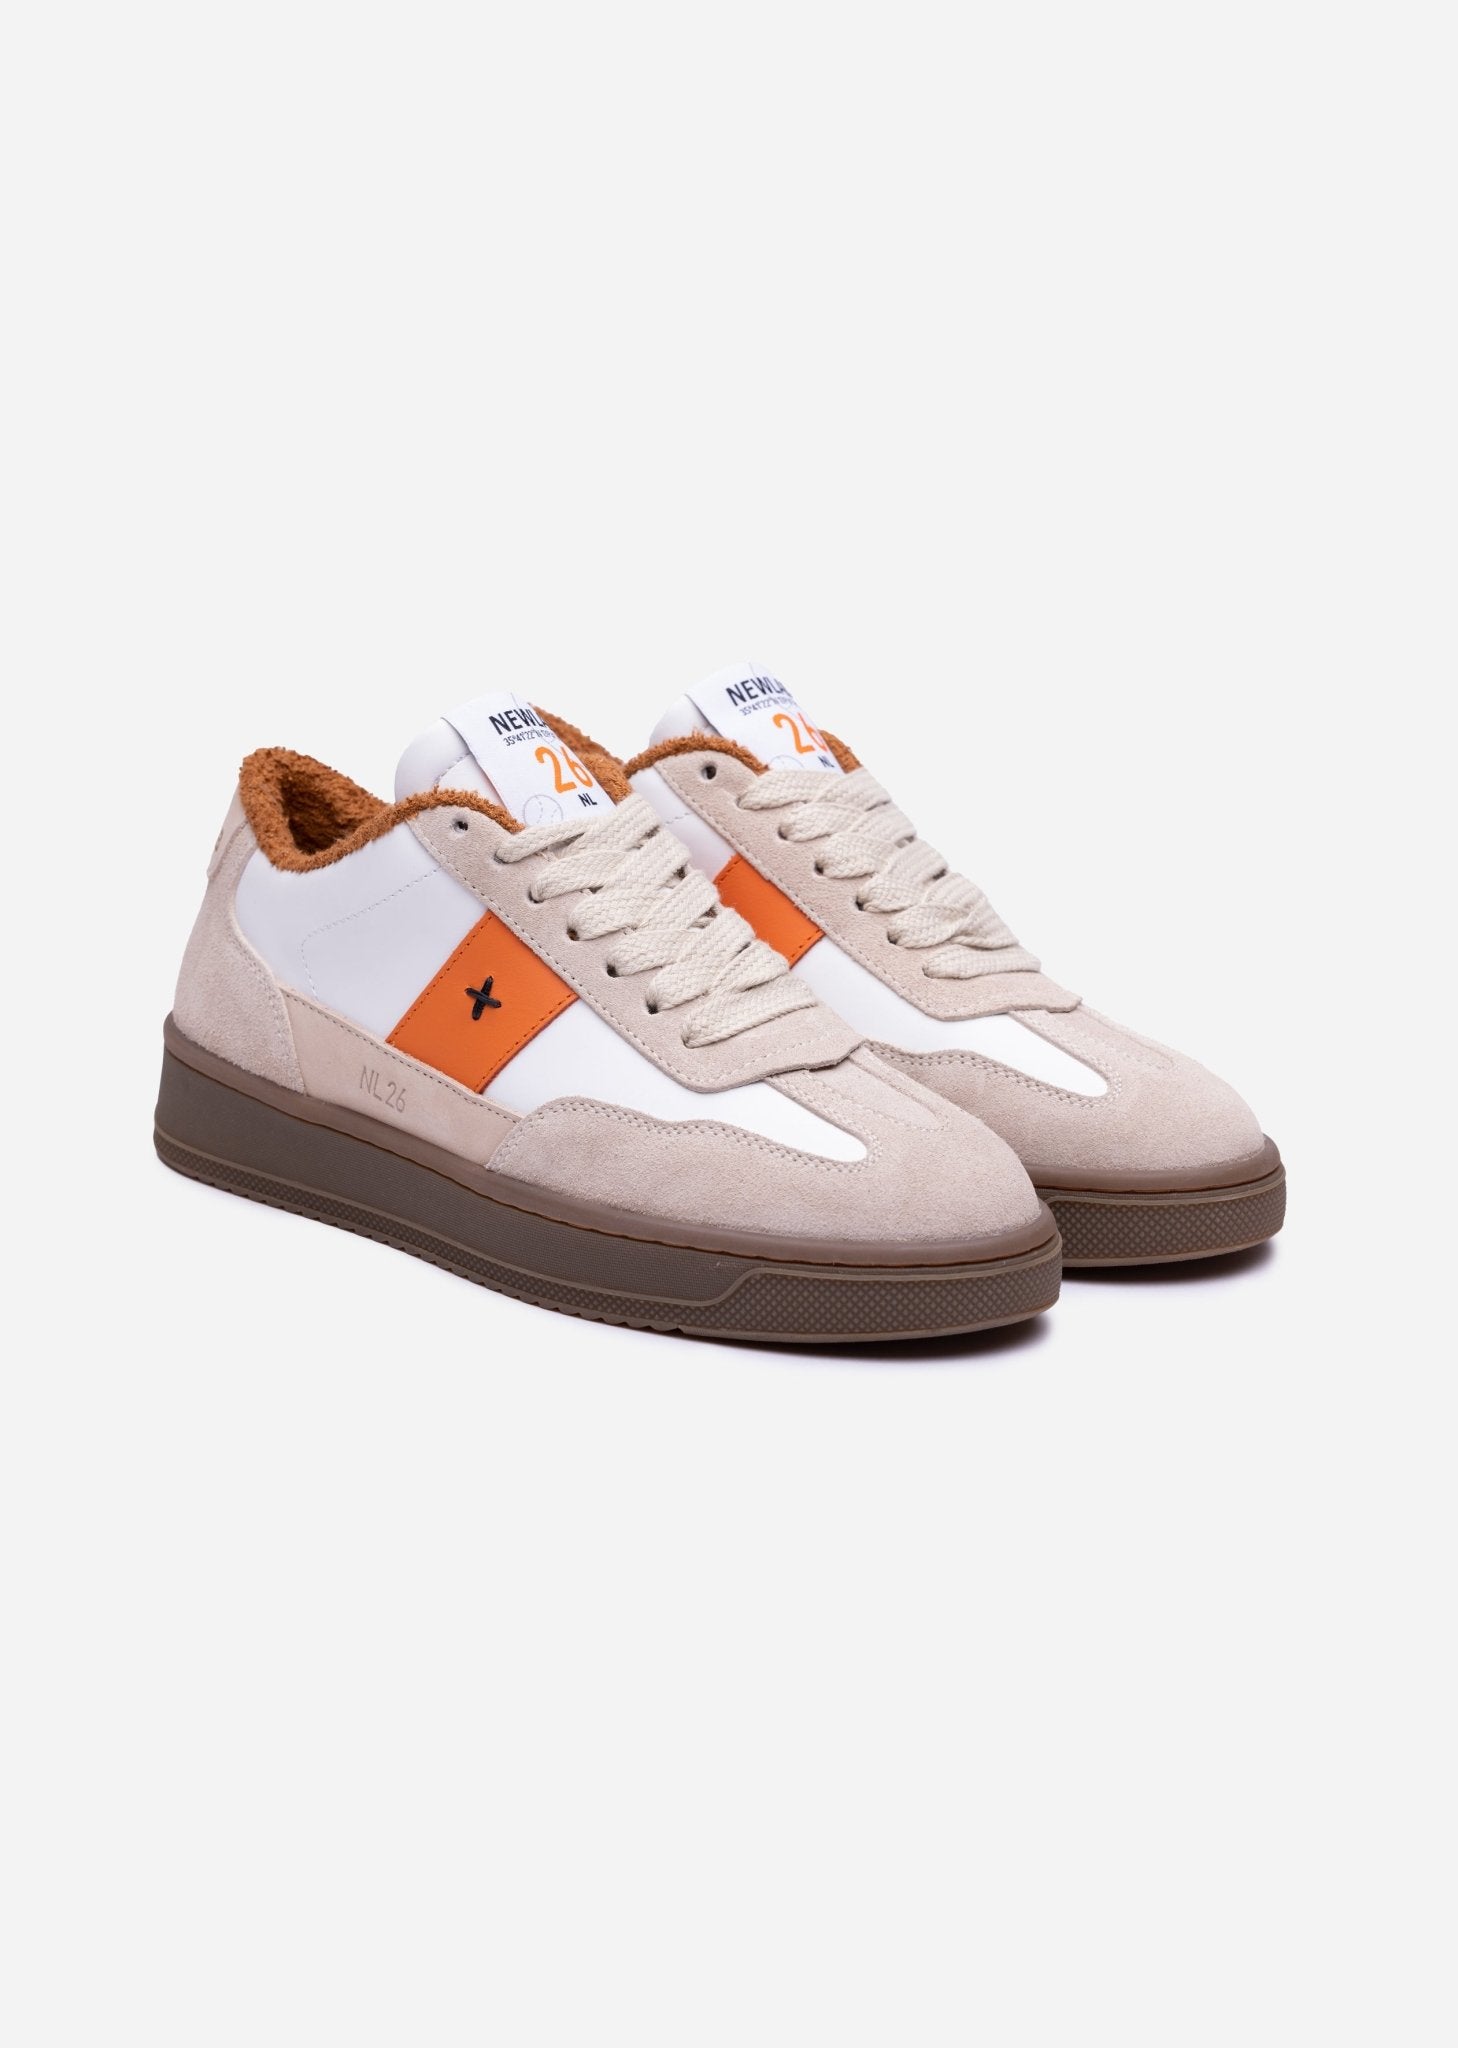 NL26 White/Beige/Orange - NEWLAB - Chaussures - NEWLAB